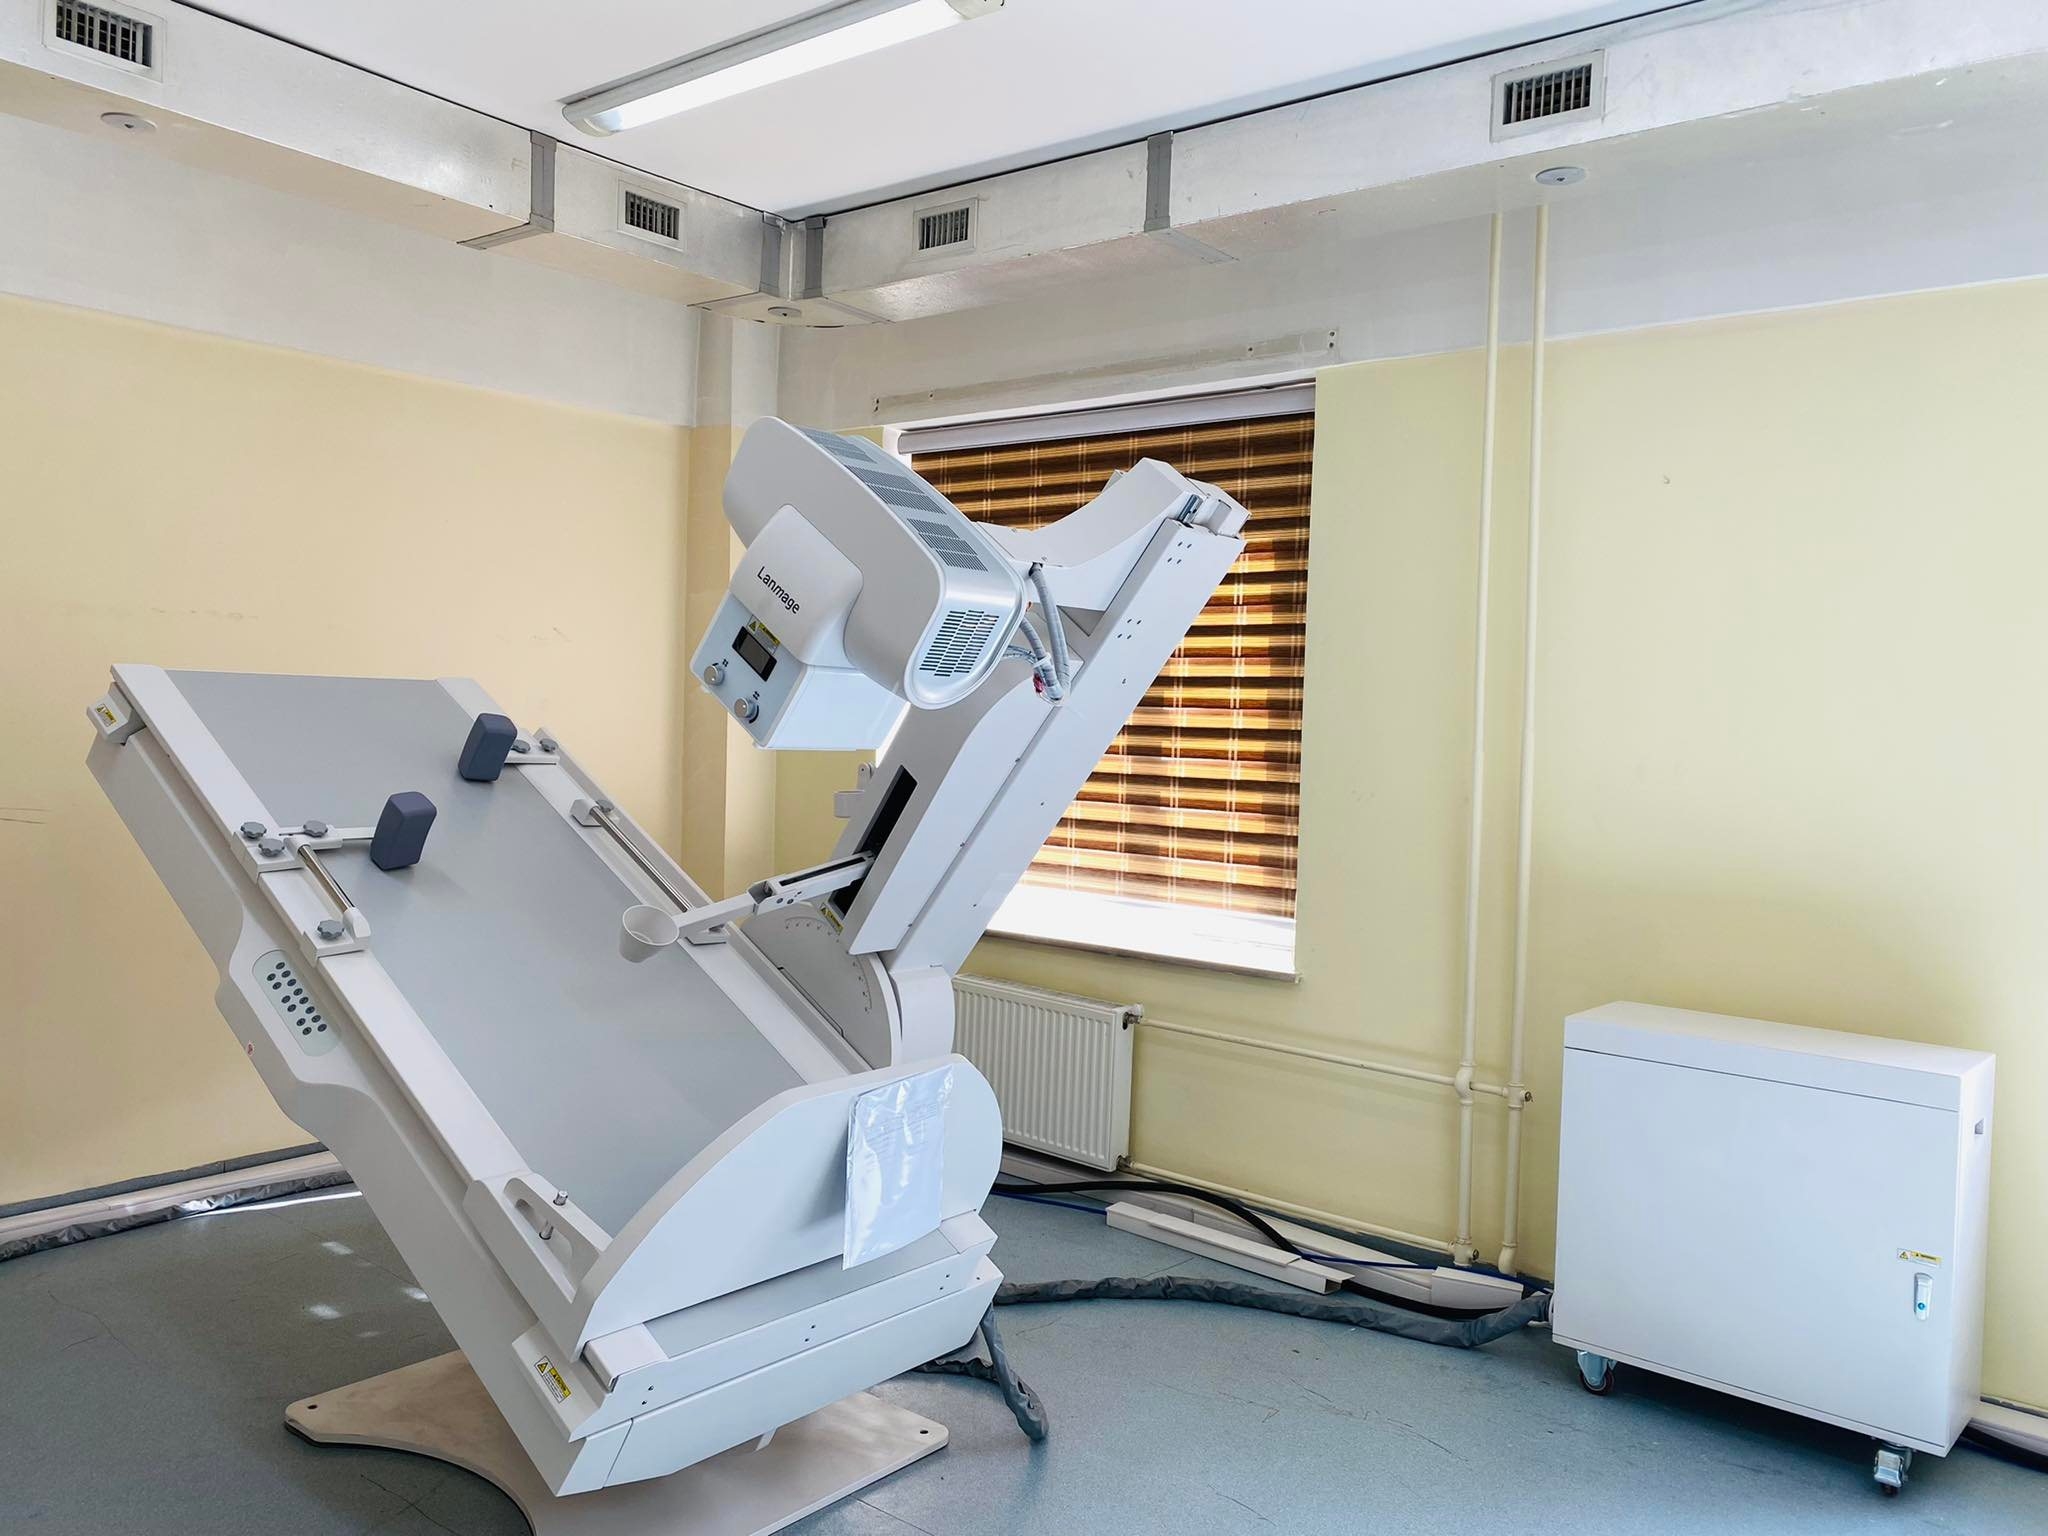 ЭМЯ-аас "Өргөө Амаржих Газар" төрөлжсөн мэргэшлийн эмнэлэгт суурин "Рентген" аппаратыг суурилуулж өглөө.